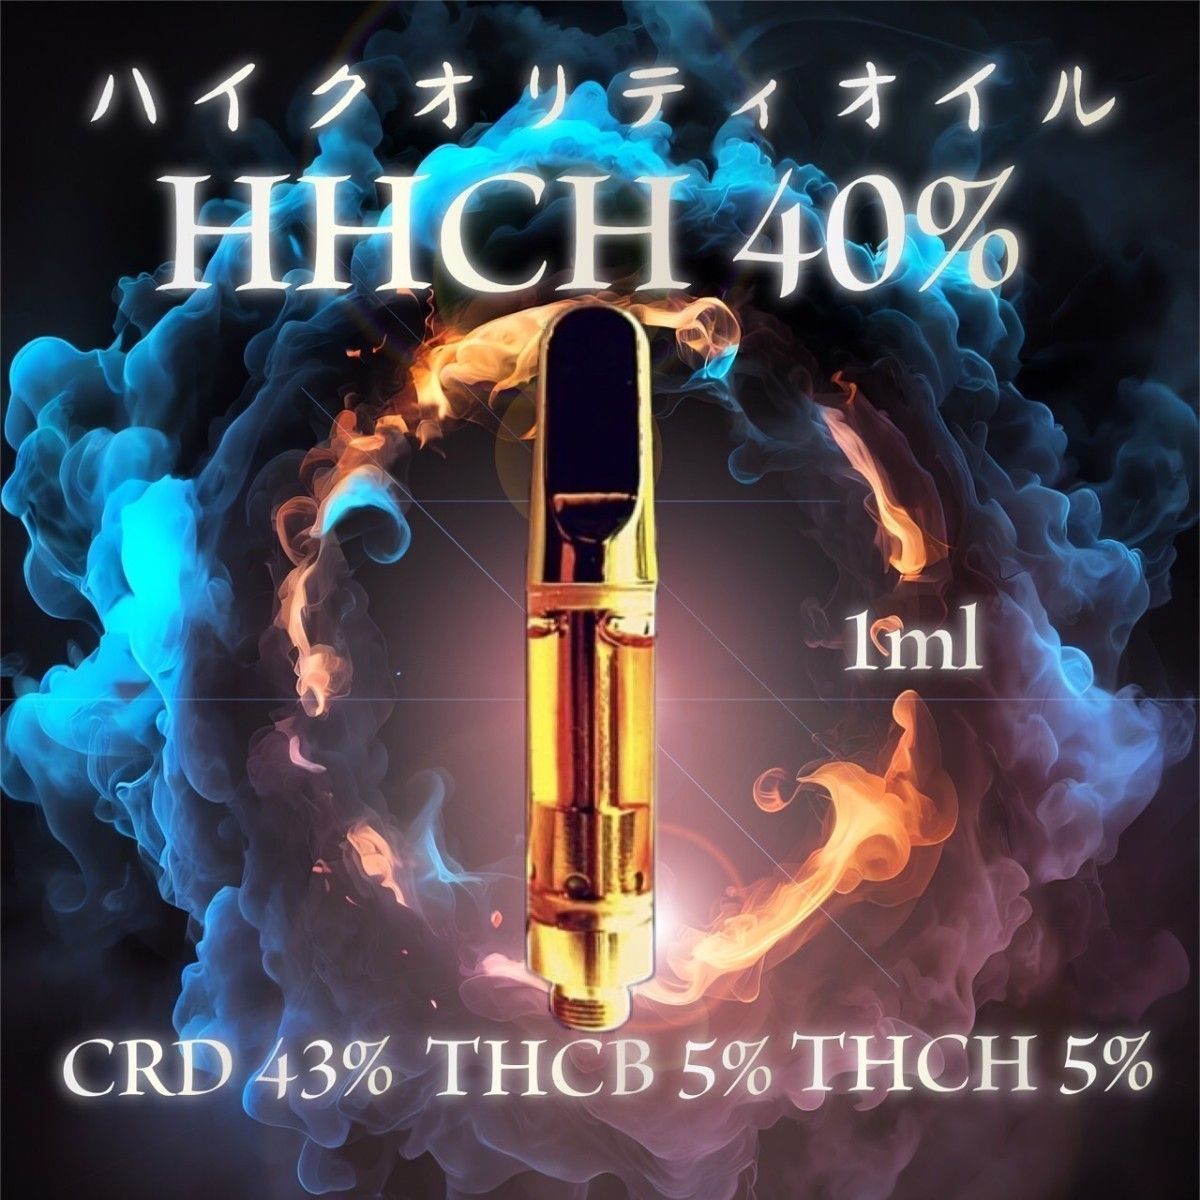 HHCH 40% 1ml 高濃度リキッドLive Resin OGKUSH - リラクゼーショングッズ